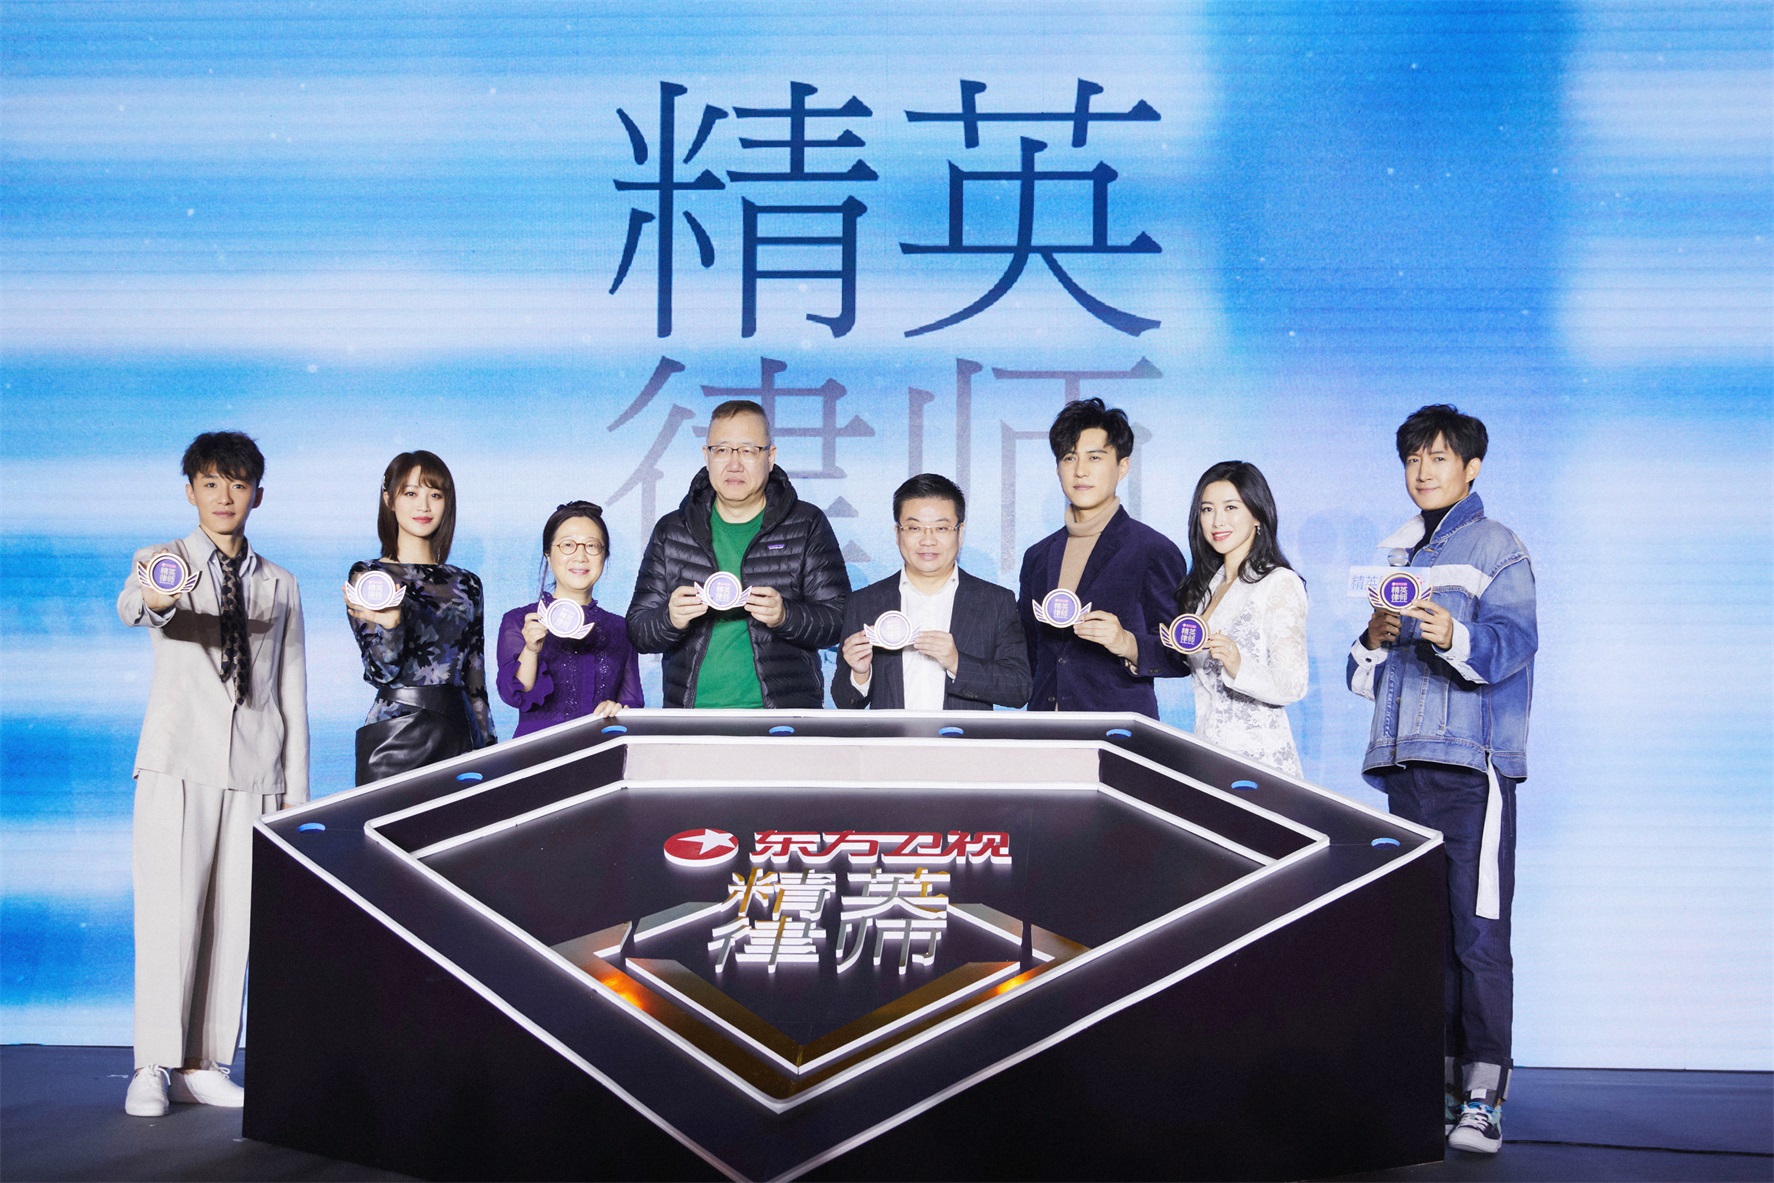 藍盈瑩出席《精英律師》上海發佈會 變身“職場小鋼炮”贏辯論